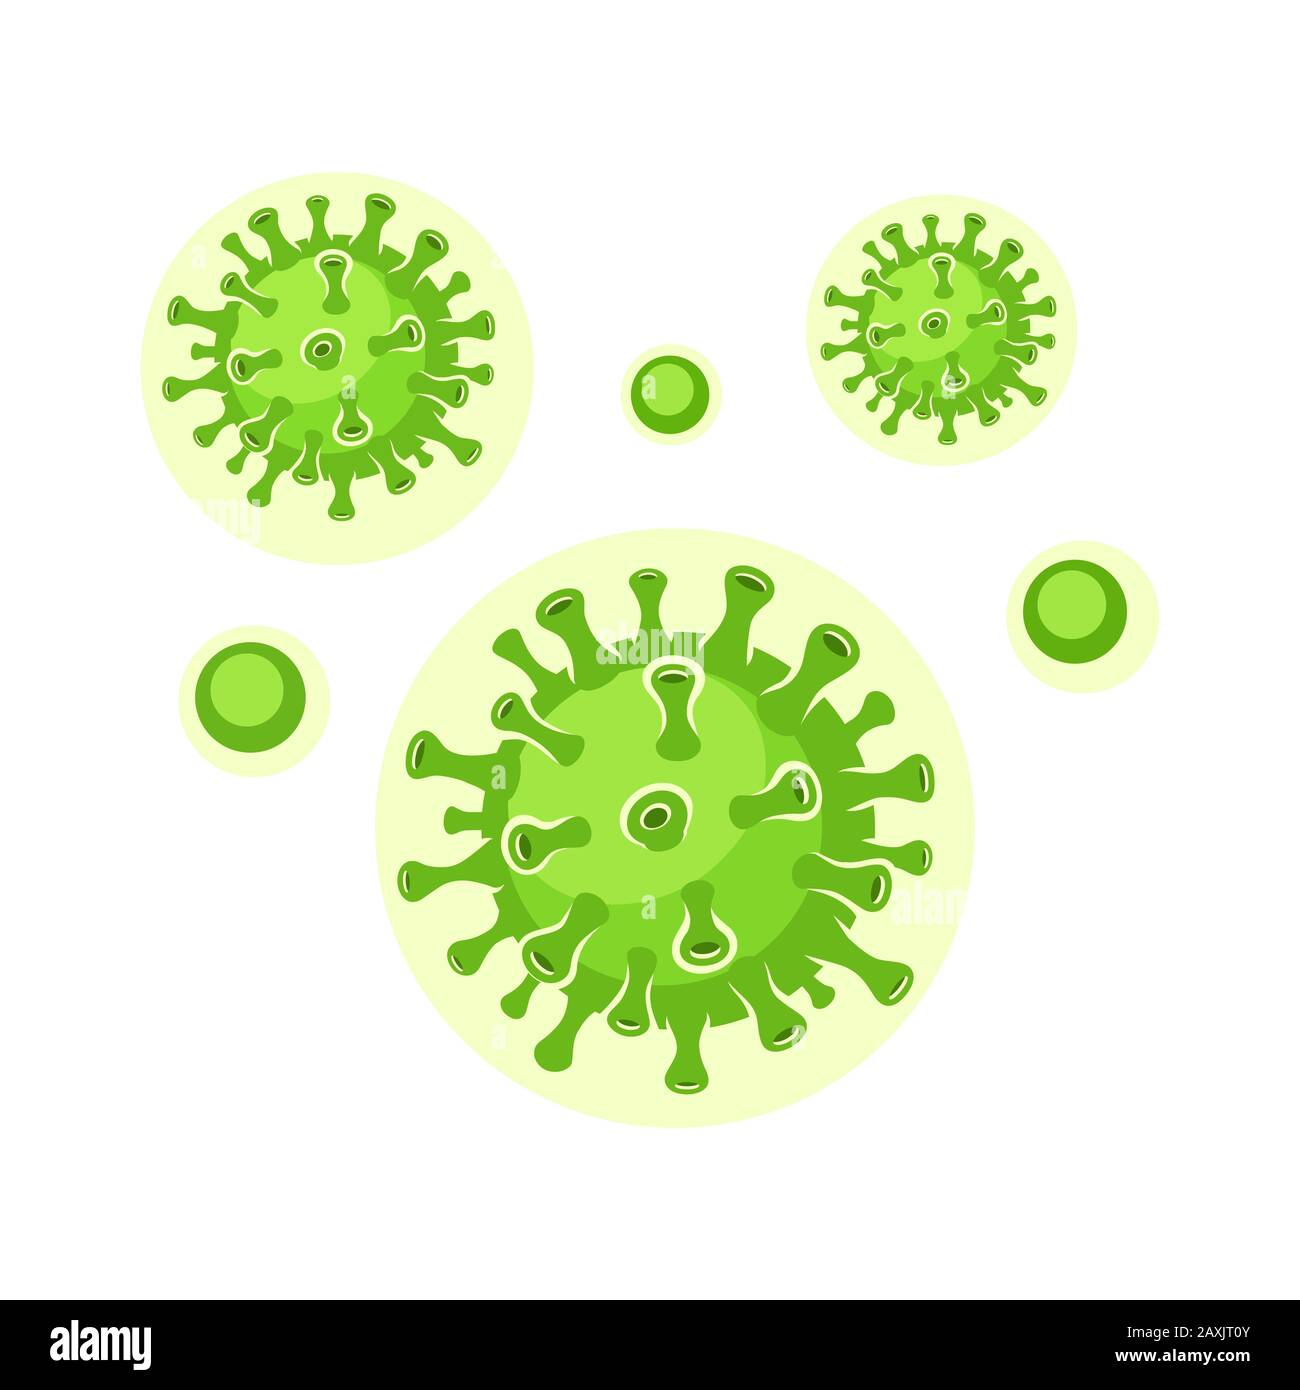 Cellule di virus verdi. Virus nell'organismo infetto, epidemia di malattia virale. Corona, virus influenzali. Concetto di sanità e medicina. Illustrazione del vettore Illustrazione Vettoriale